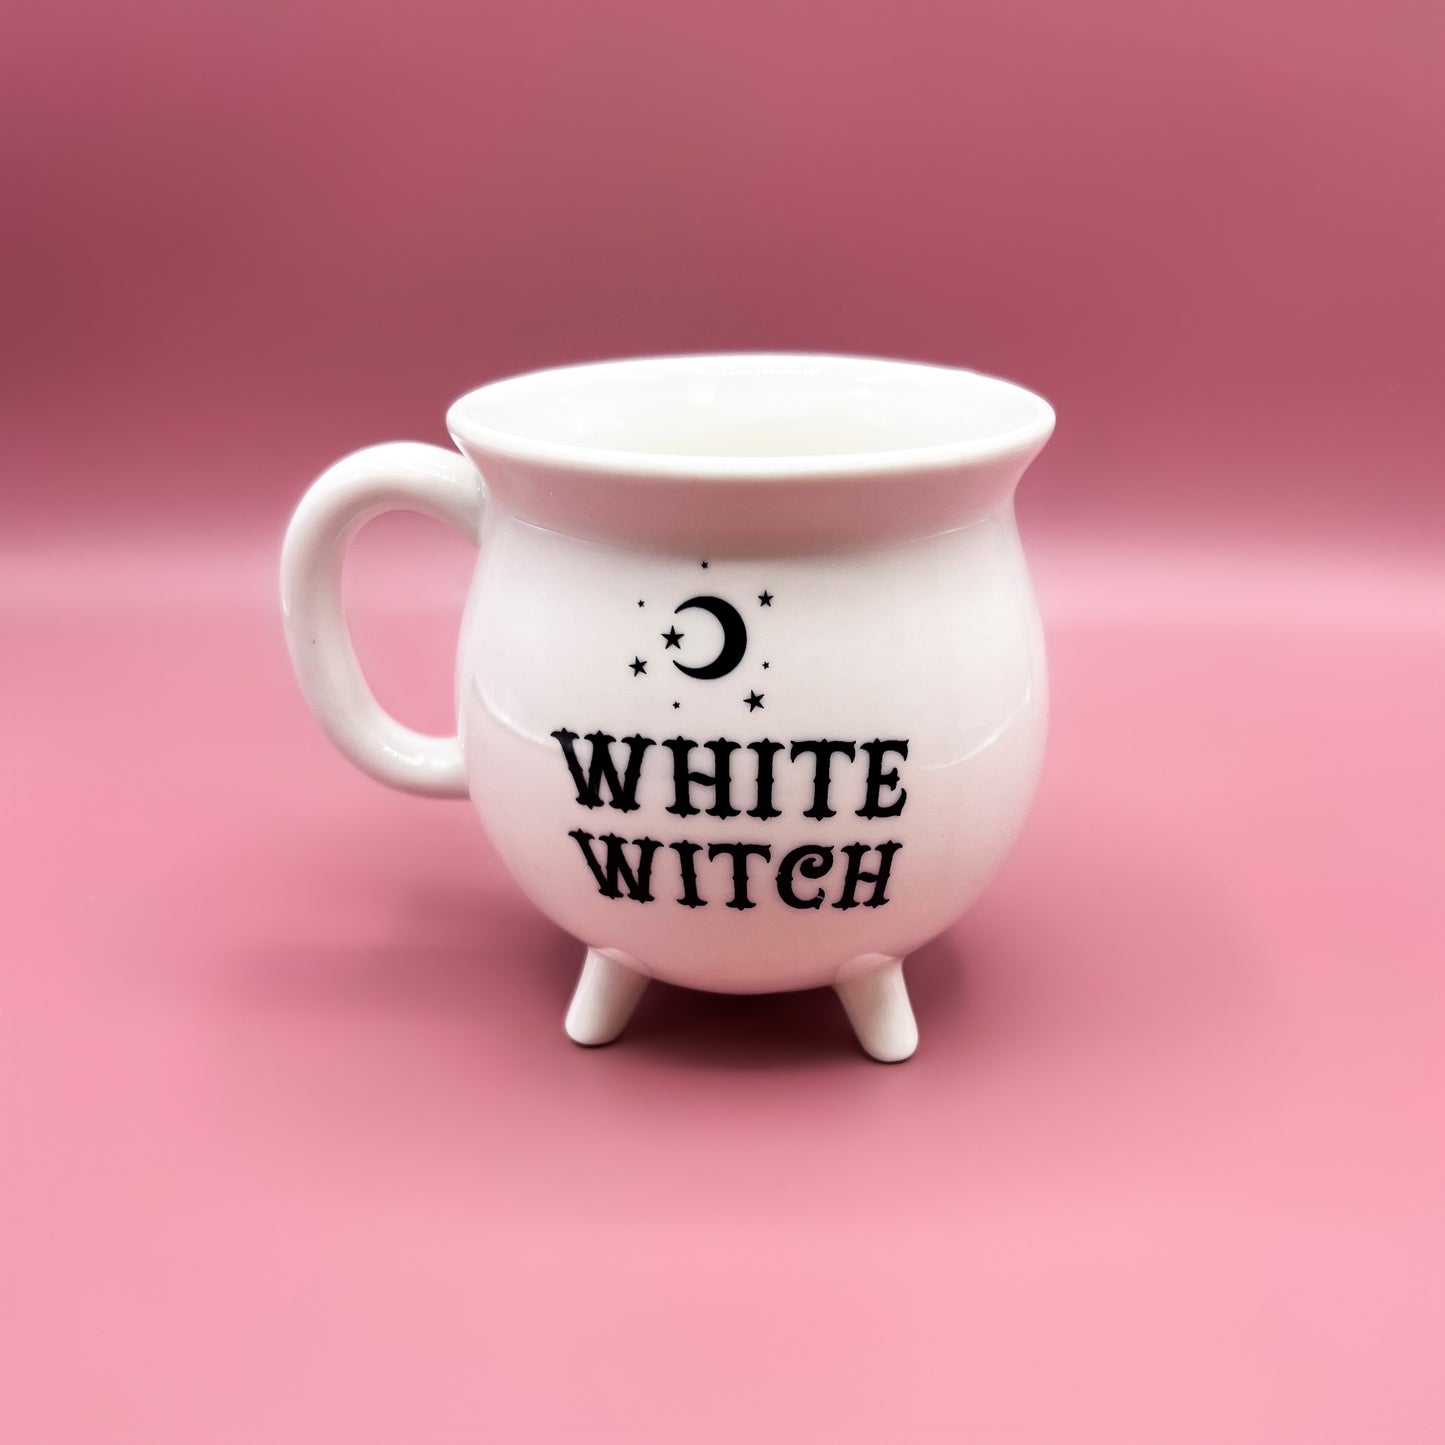 White Witch cauldron mug